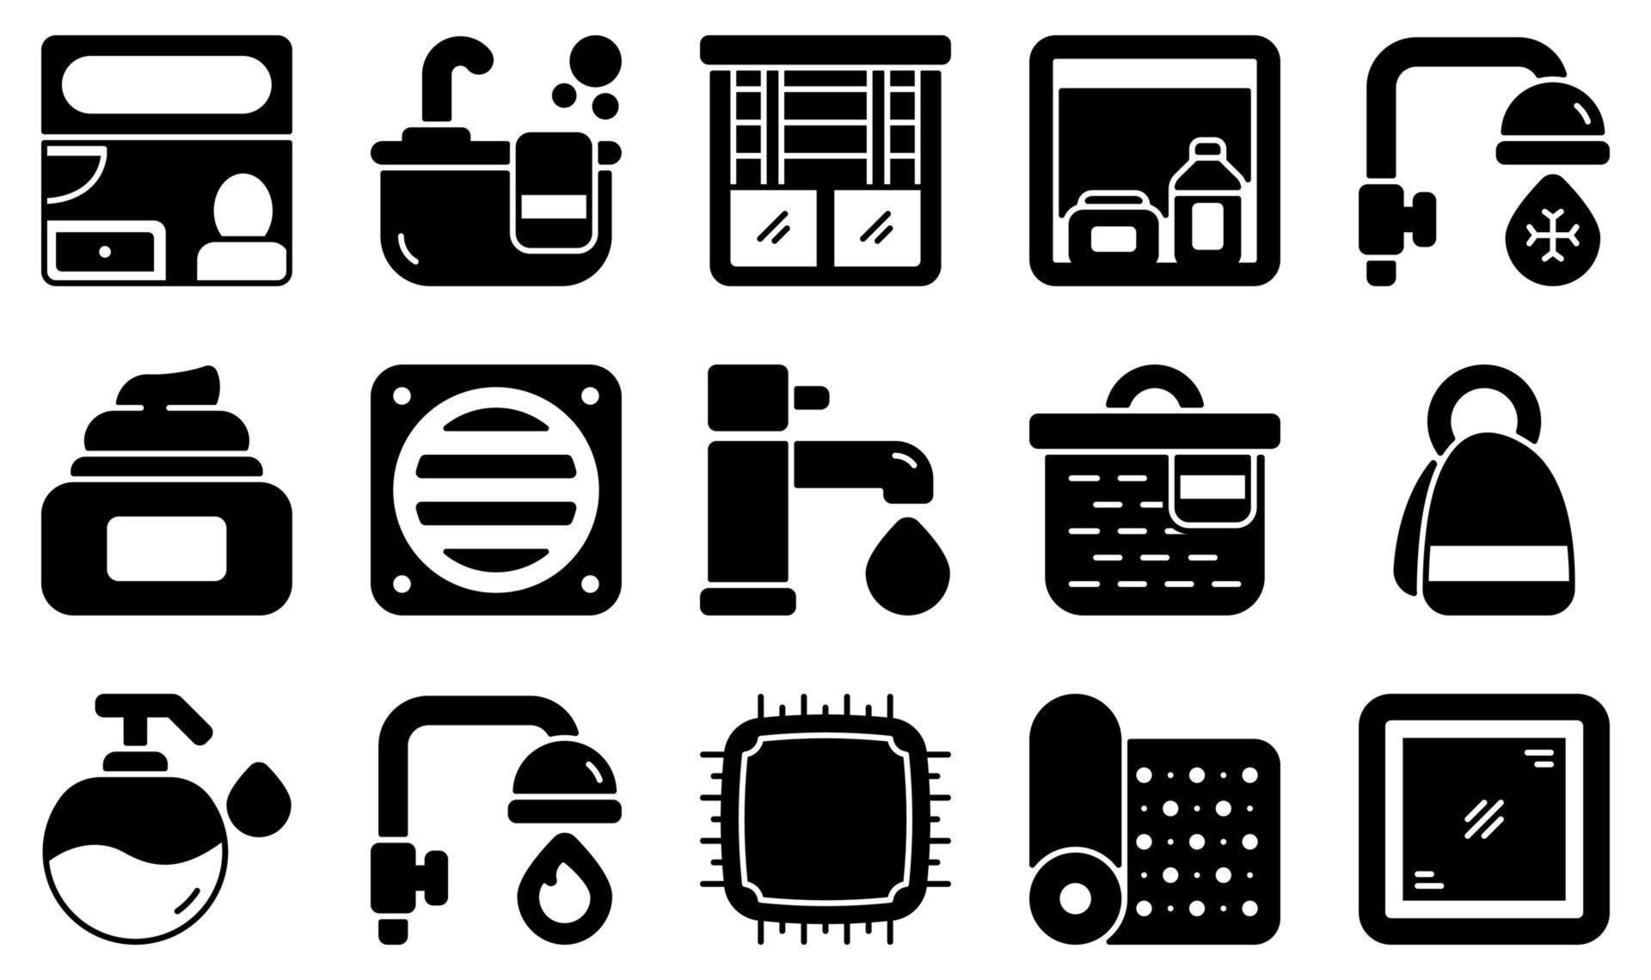 uppsättning vektor ikoner relaterade till badrum. innehåller sådana ikoner som badrum, badkar, persienner, skåp, basket, kallt vatten och mer.